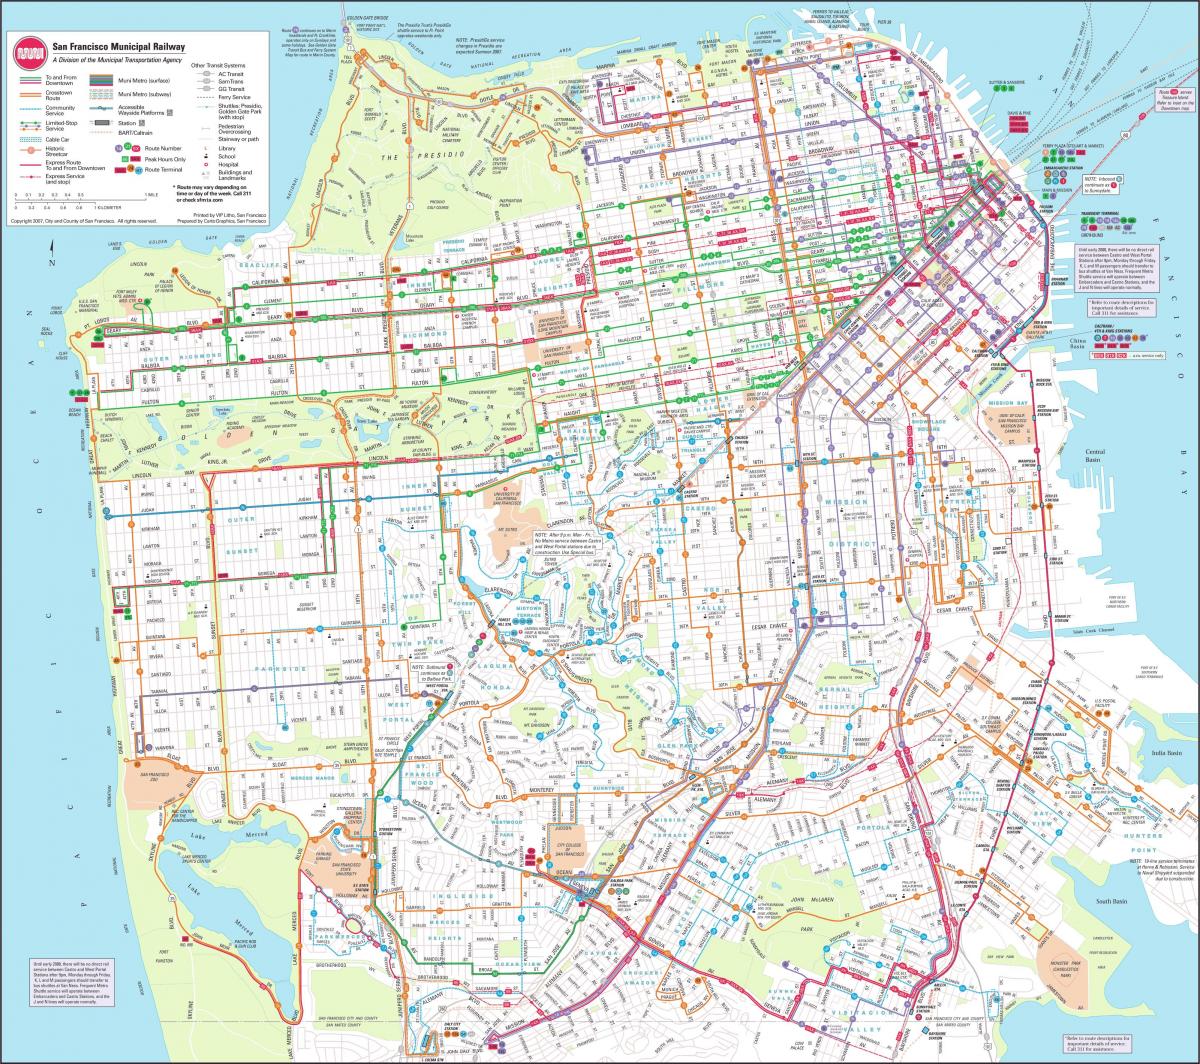 რუკა San Francisco მუნიციპალური რკინიგზის